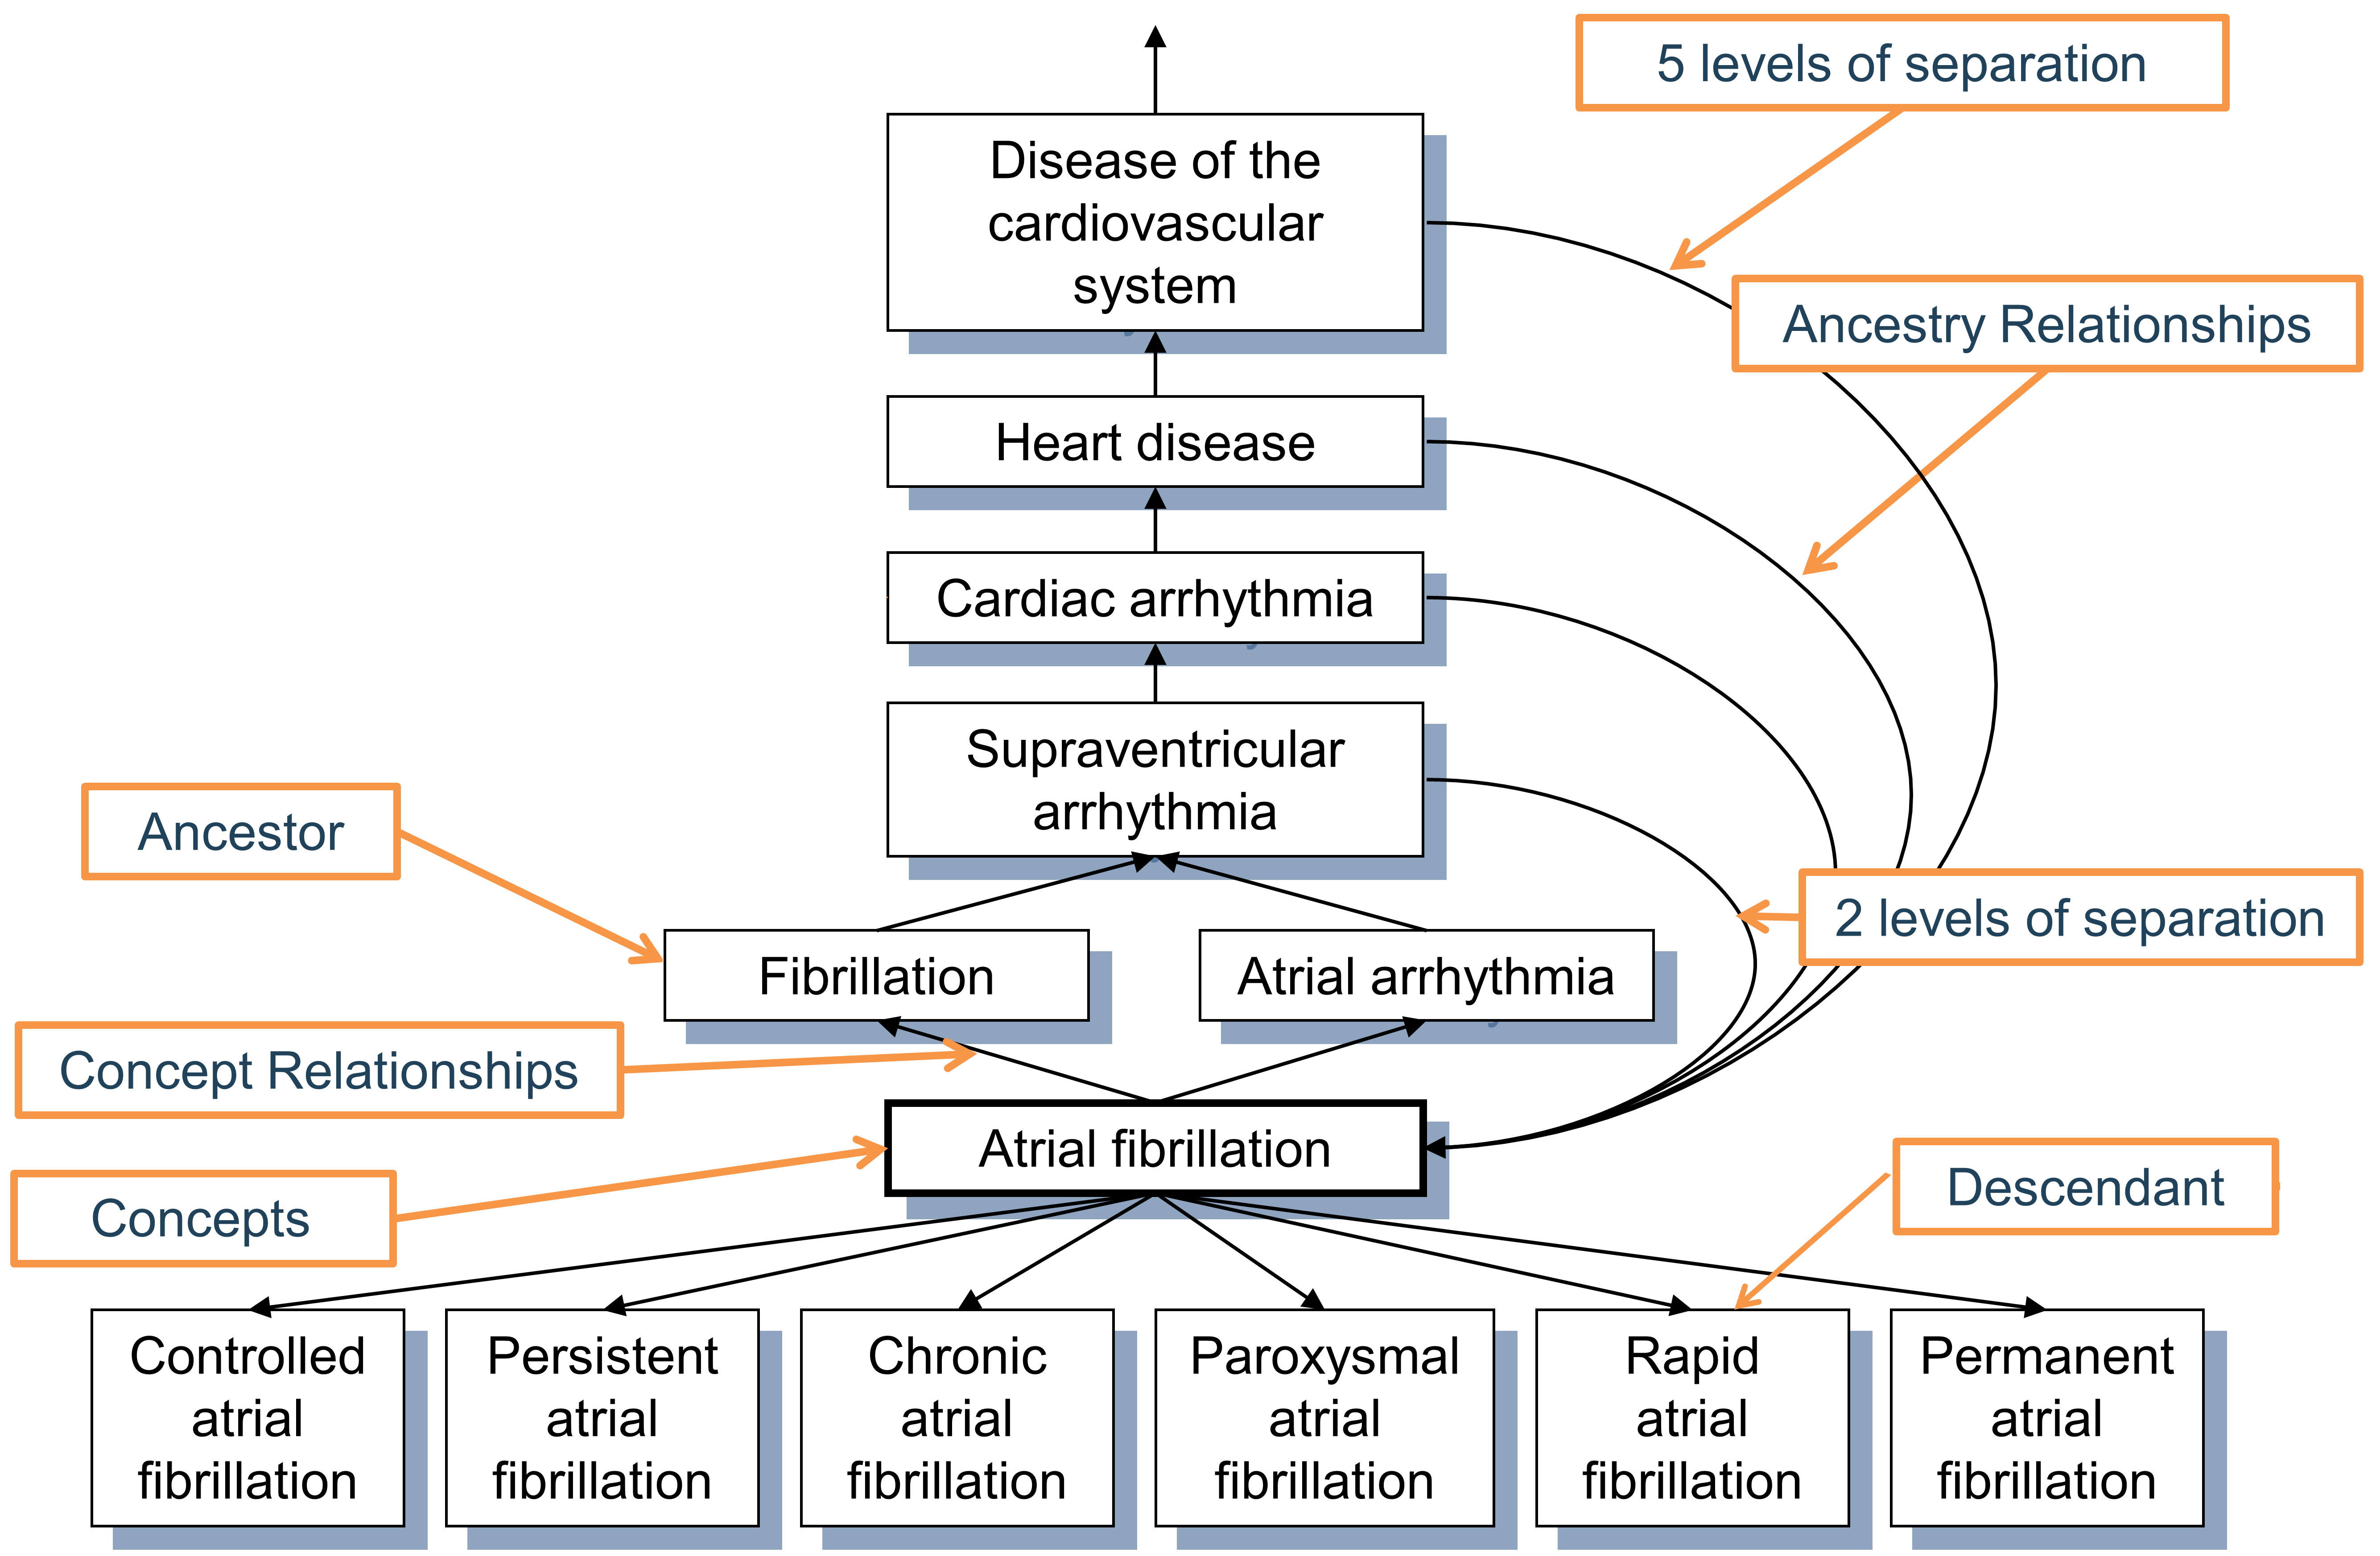 “심방세동 atrial fibrillation” condition의 계층. First degree ancestry는 “Is a”와 “Subsumes” 관계를 통해 정의되며, 모든 higher degree 관계는 추론되고, CONCEPT_ANCESTOR 표에 저장된다. 각 개념은 분리 수준이 0인 자기 자신의 하위 개념이다. 